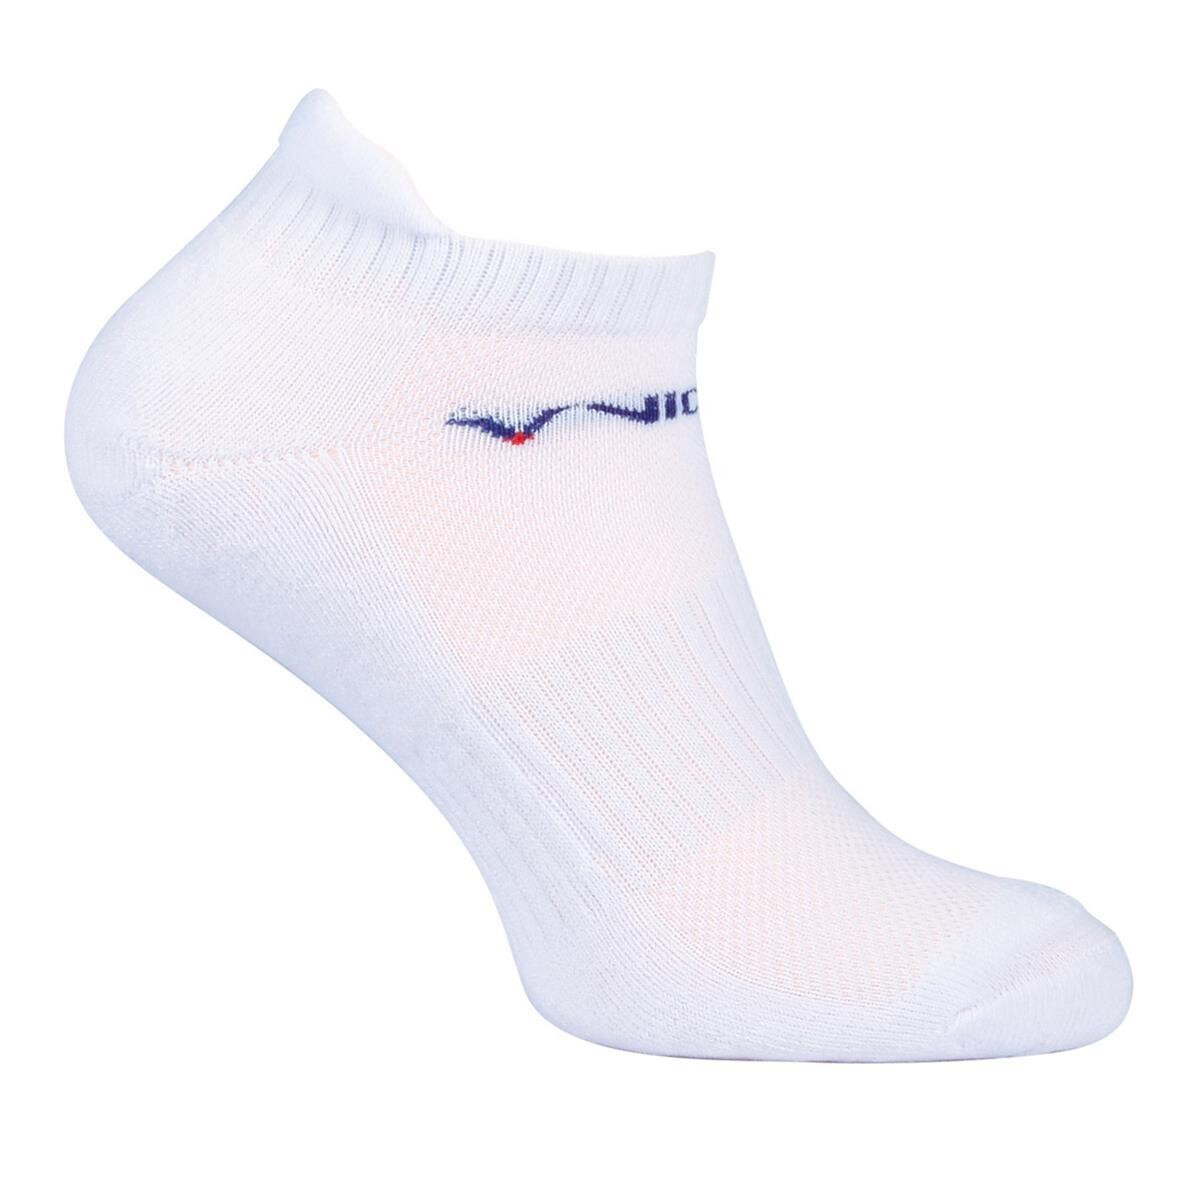 Victor Sneaker Sock White - 2 Pack